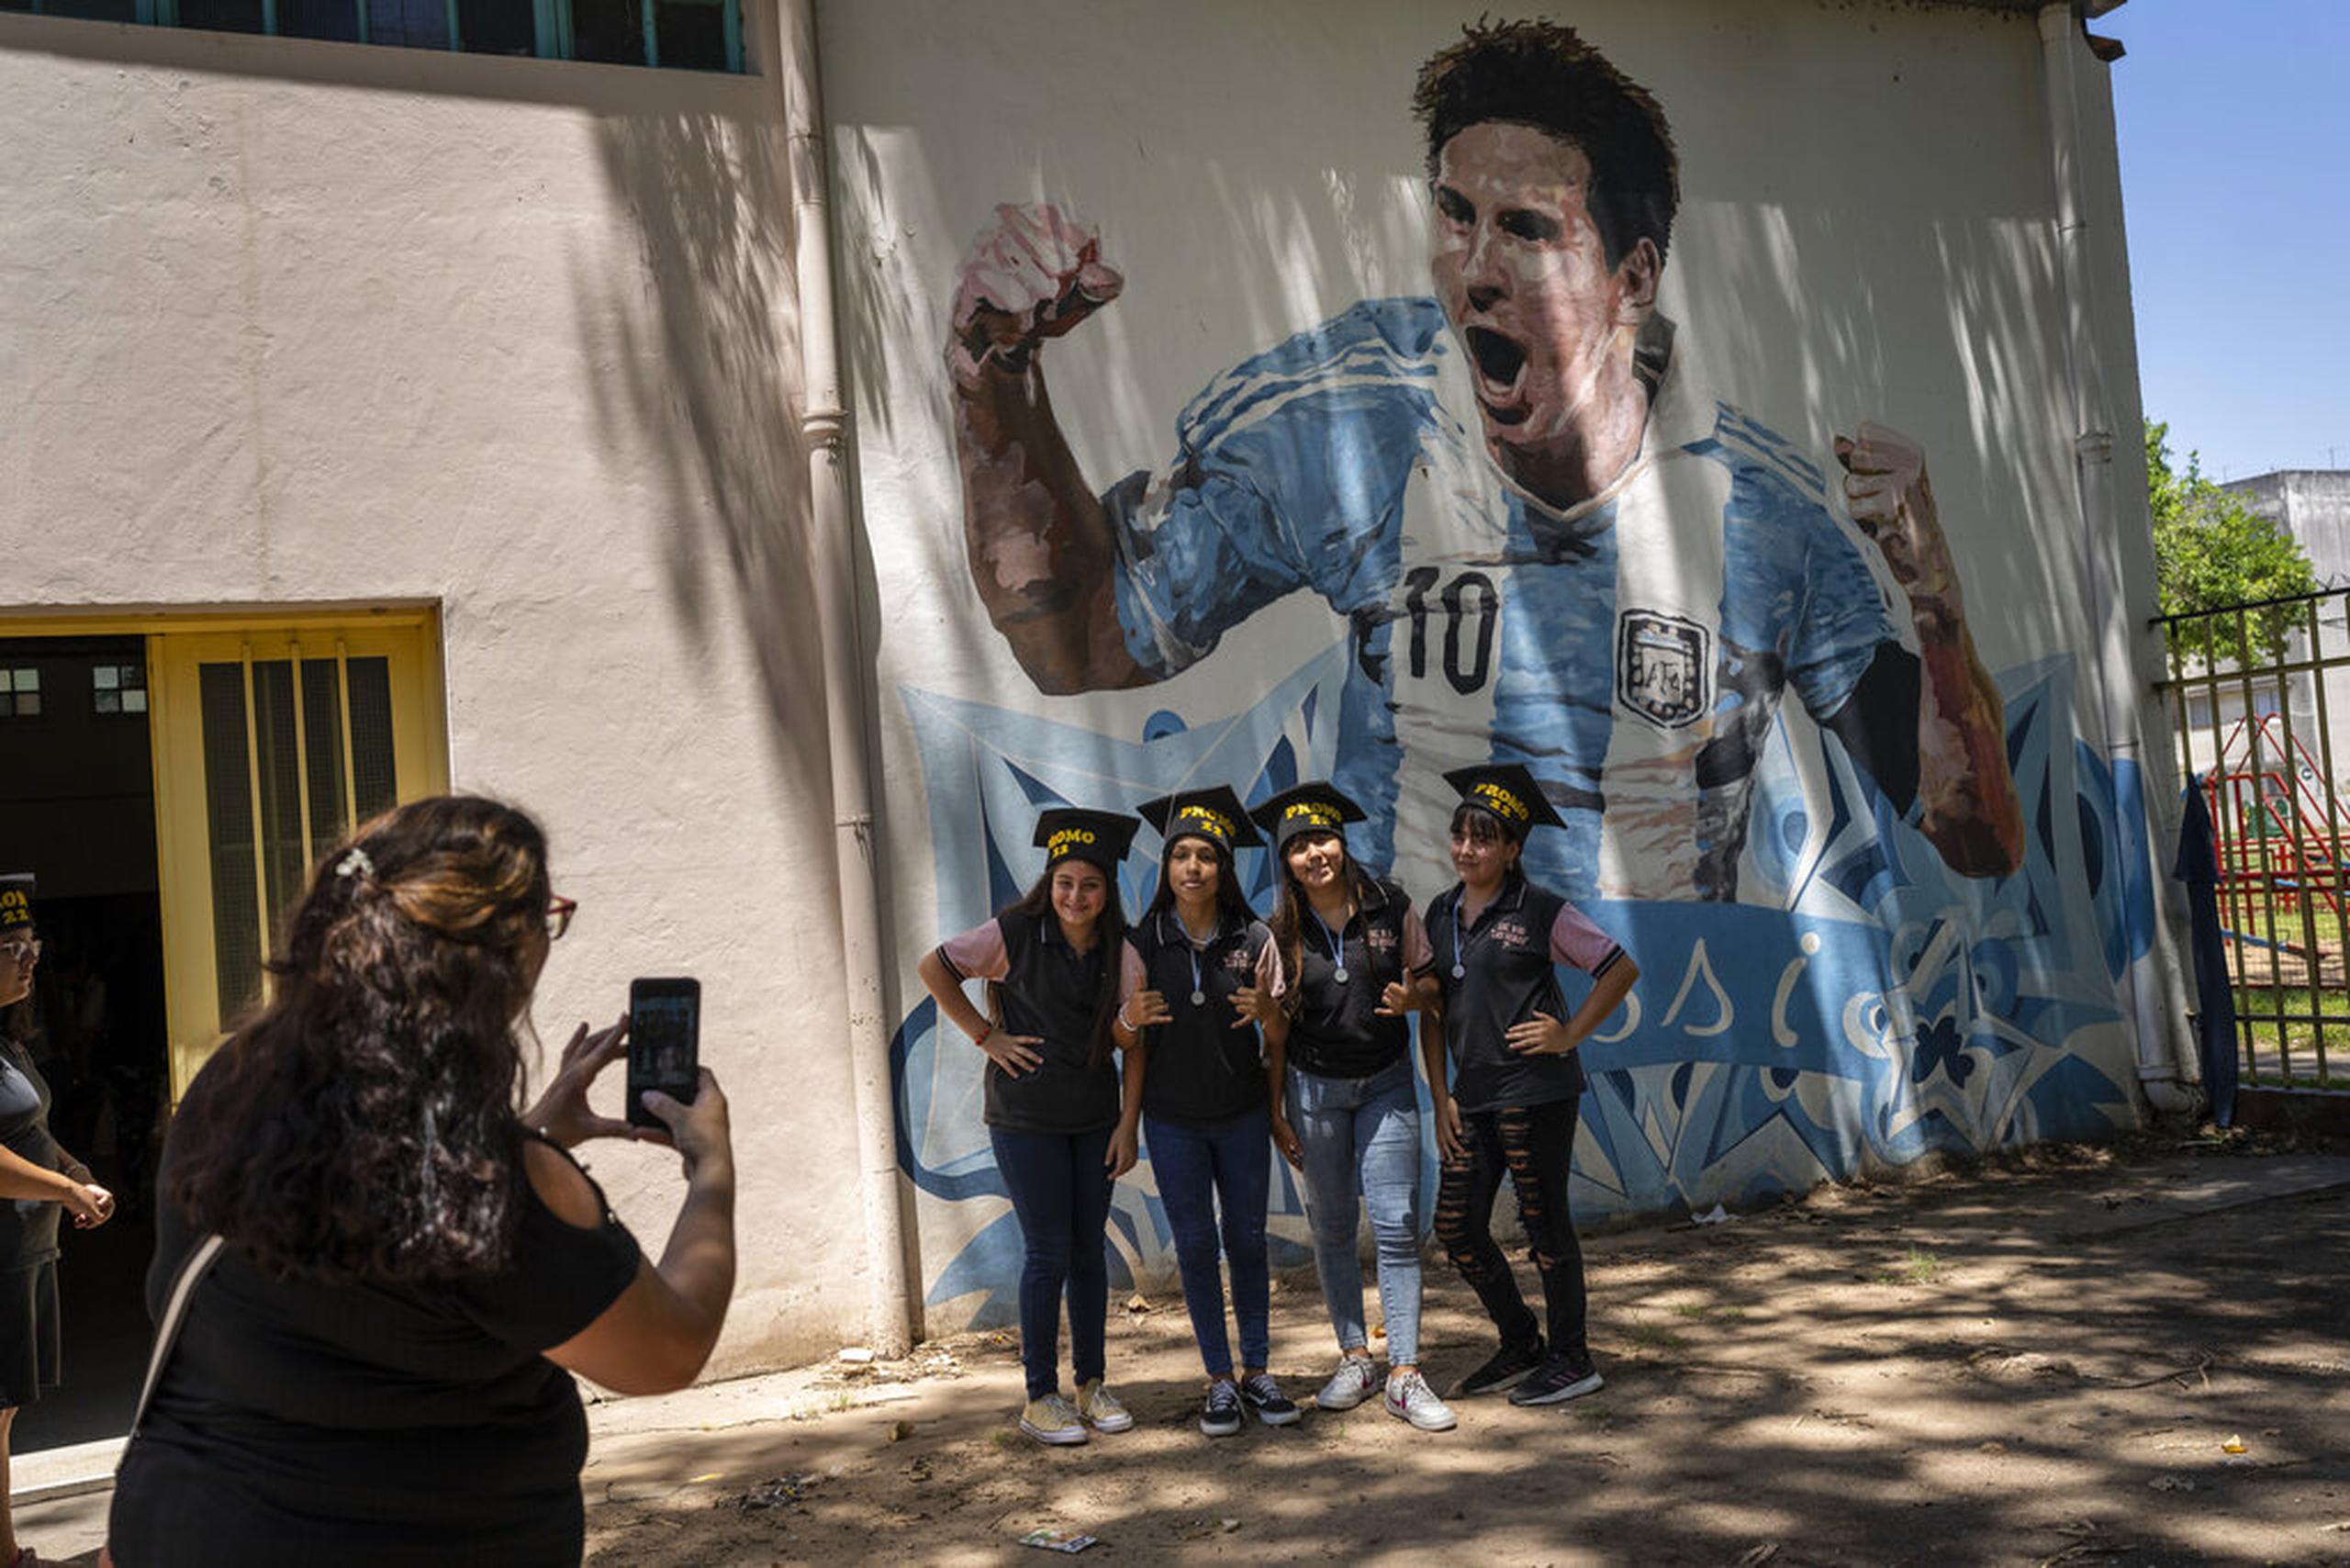 Estudiantes egresados de las escuela primaria General Las Heras, donde Lionel Messi hizo sus estudios, posan para una foto frente a un mural del futbolista, en el último día de clases, en Rosario, Argentina.